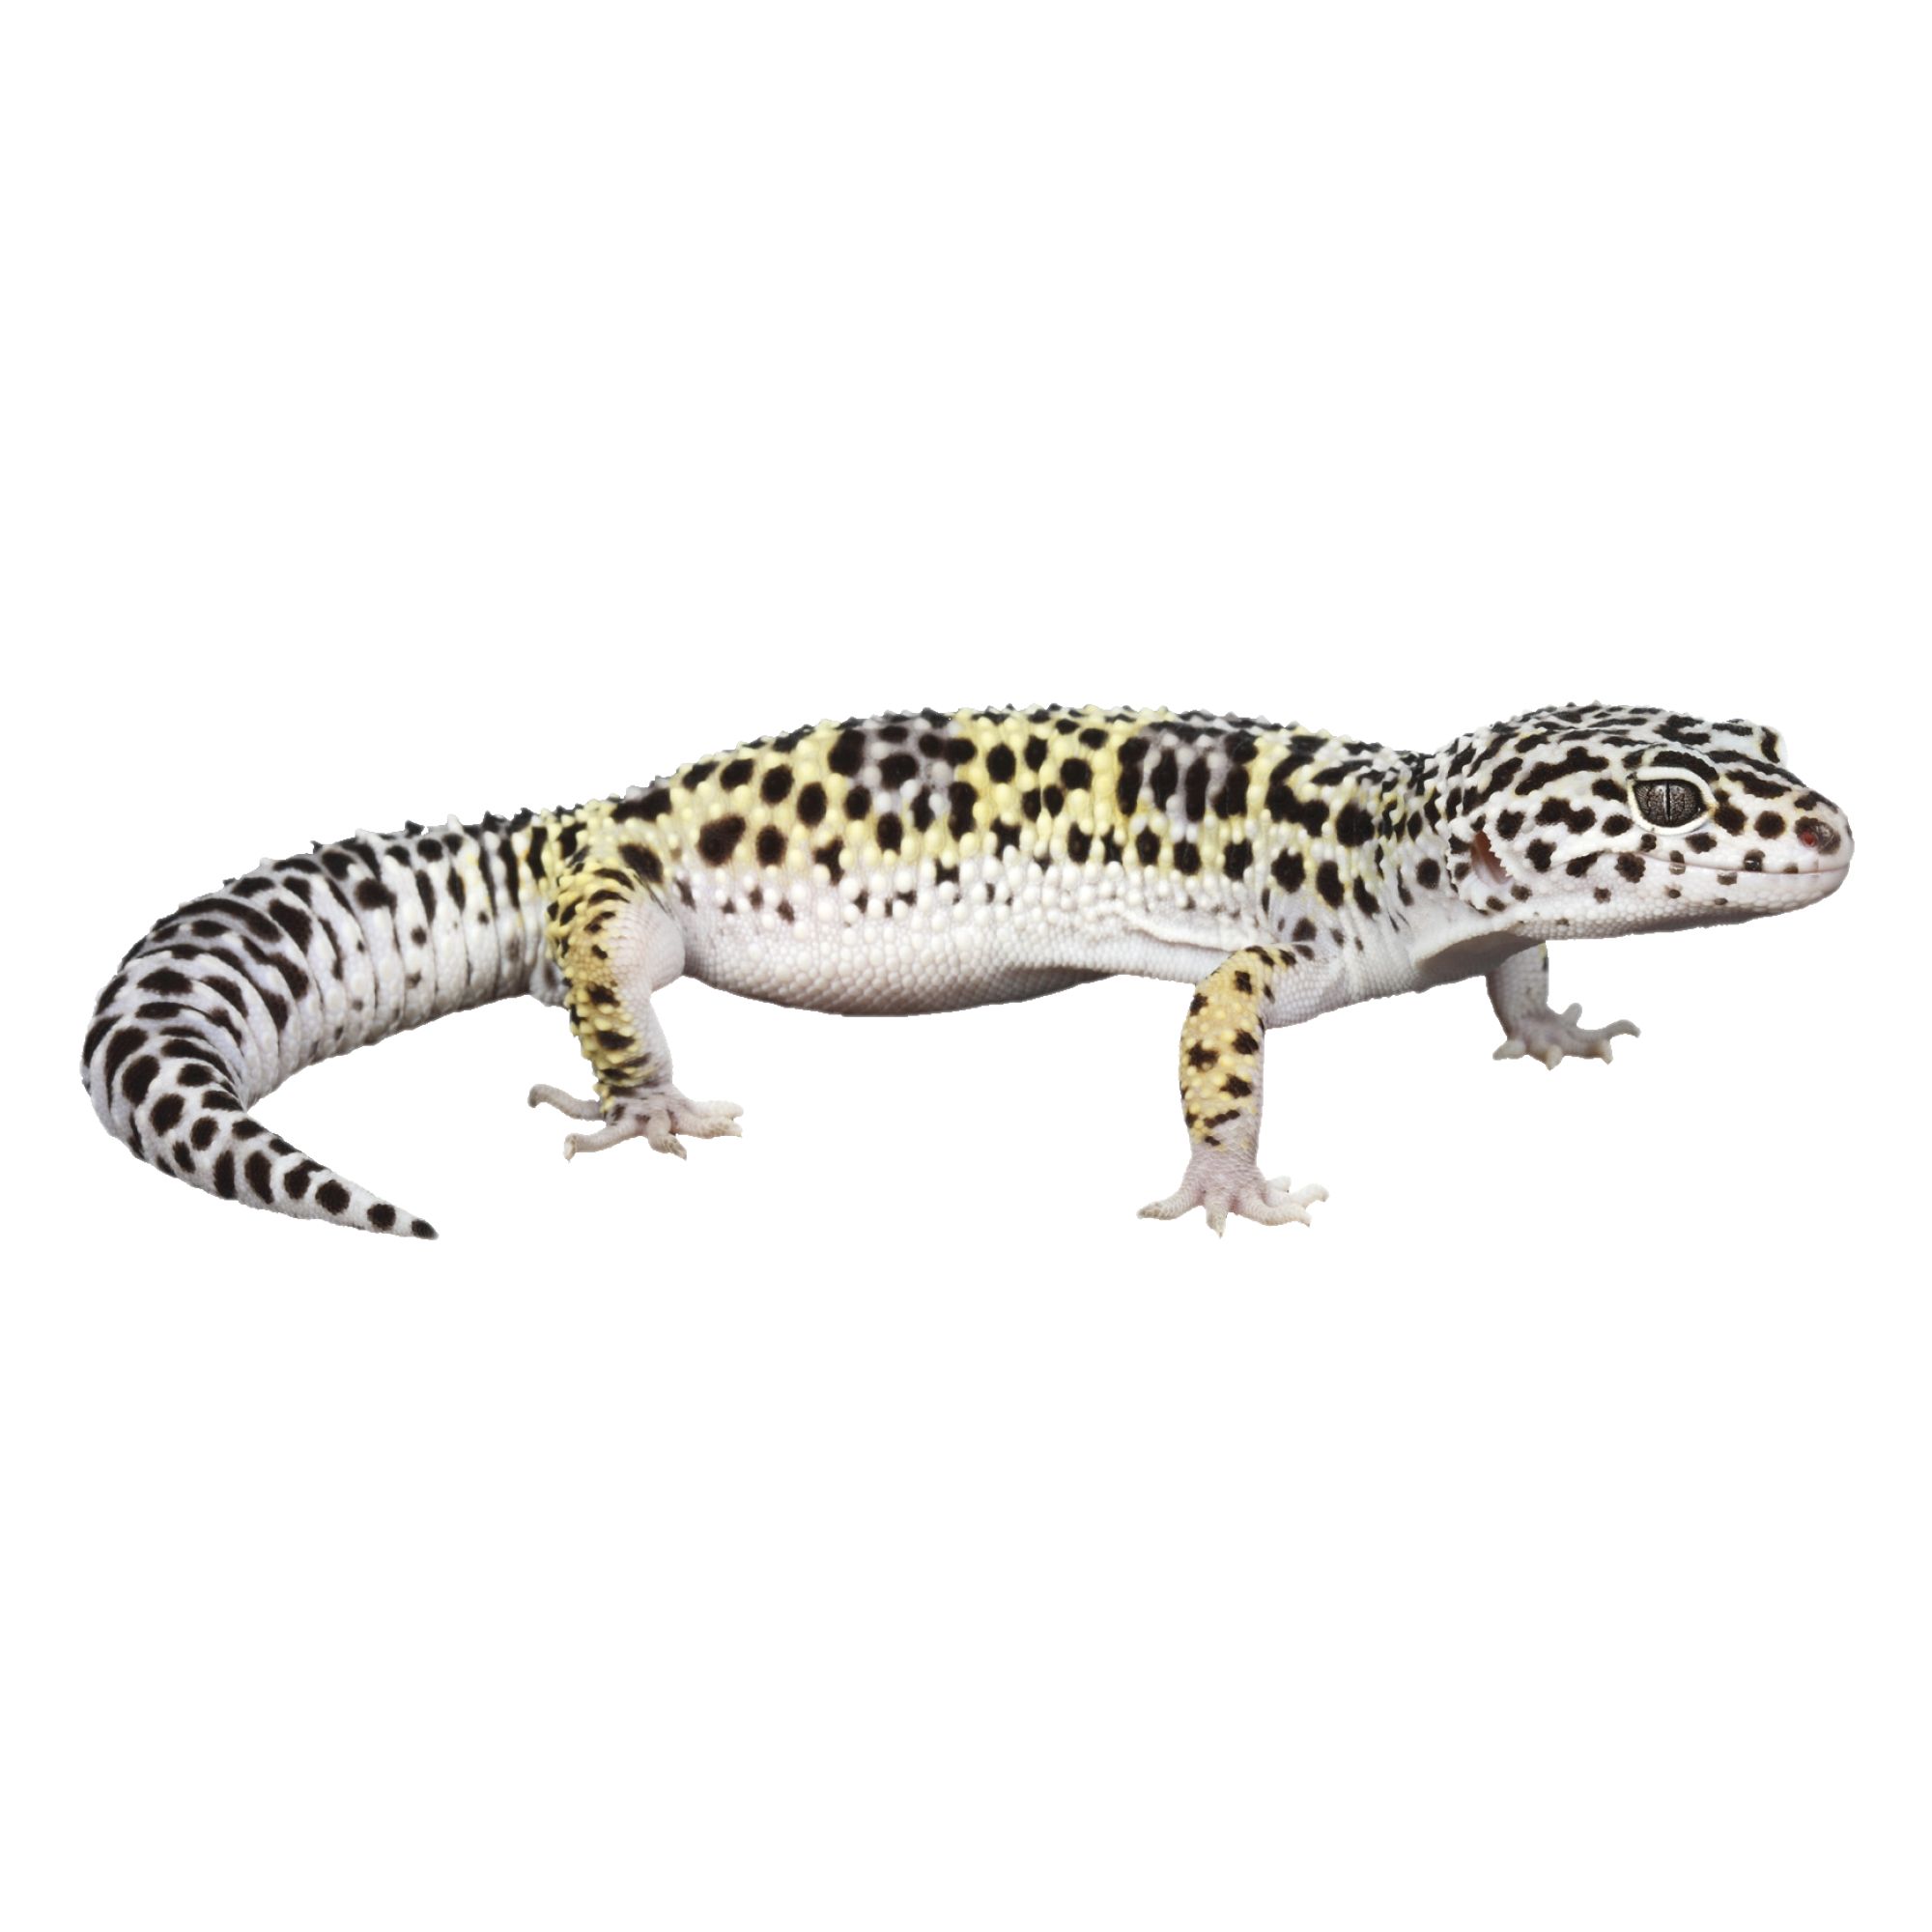 Leopard Gecko For Sale | Live Pet 